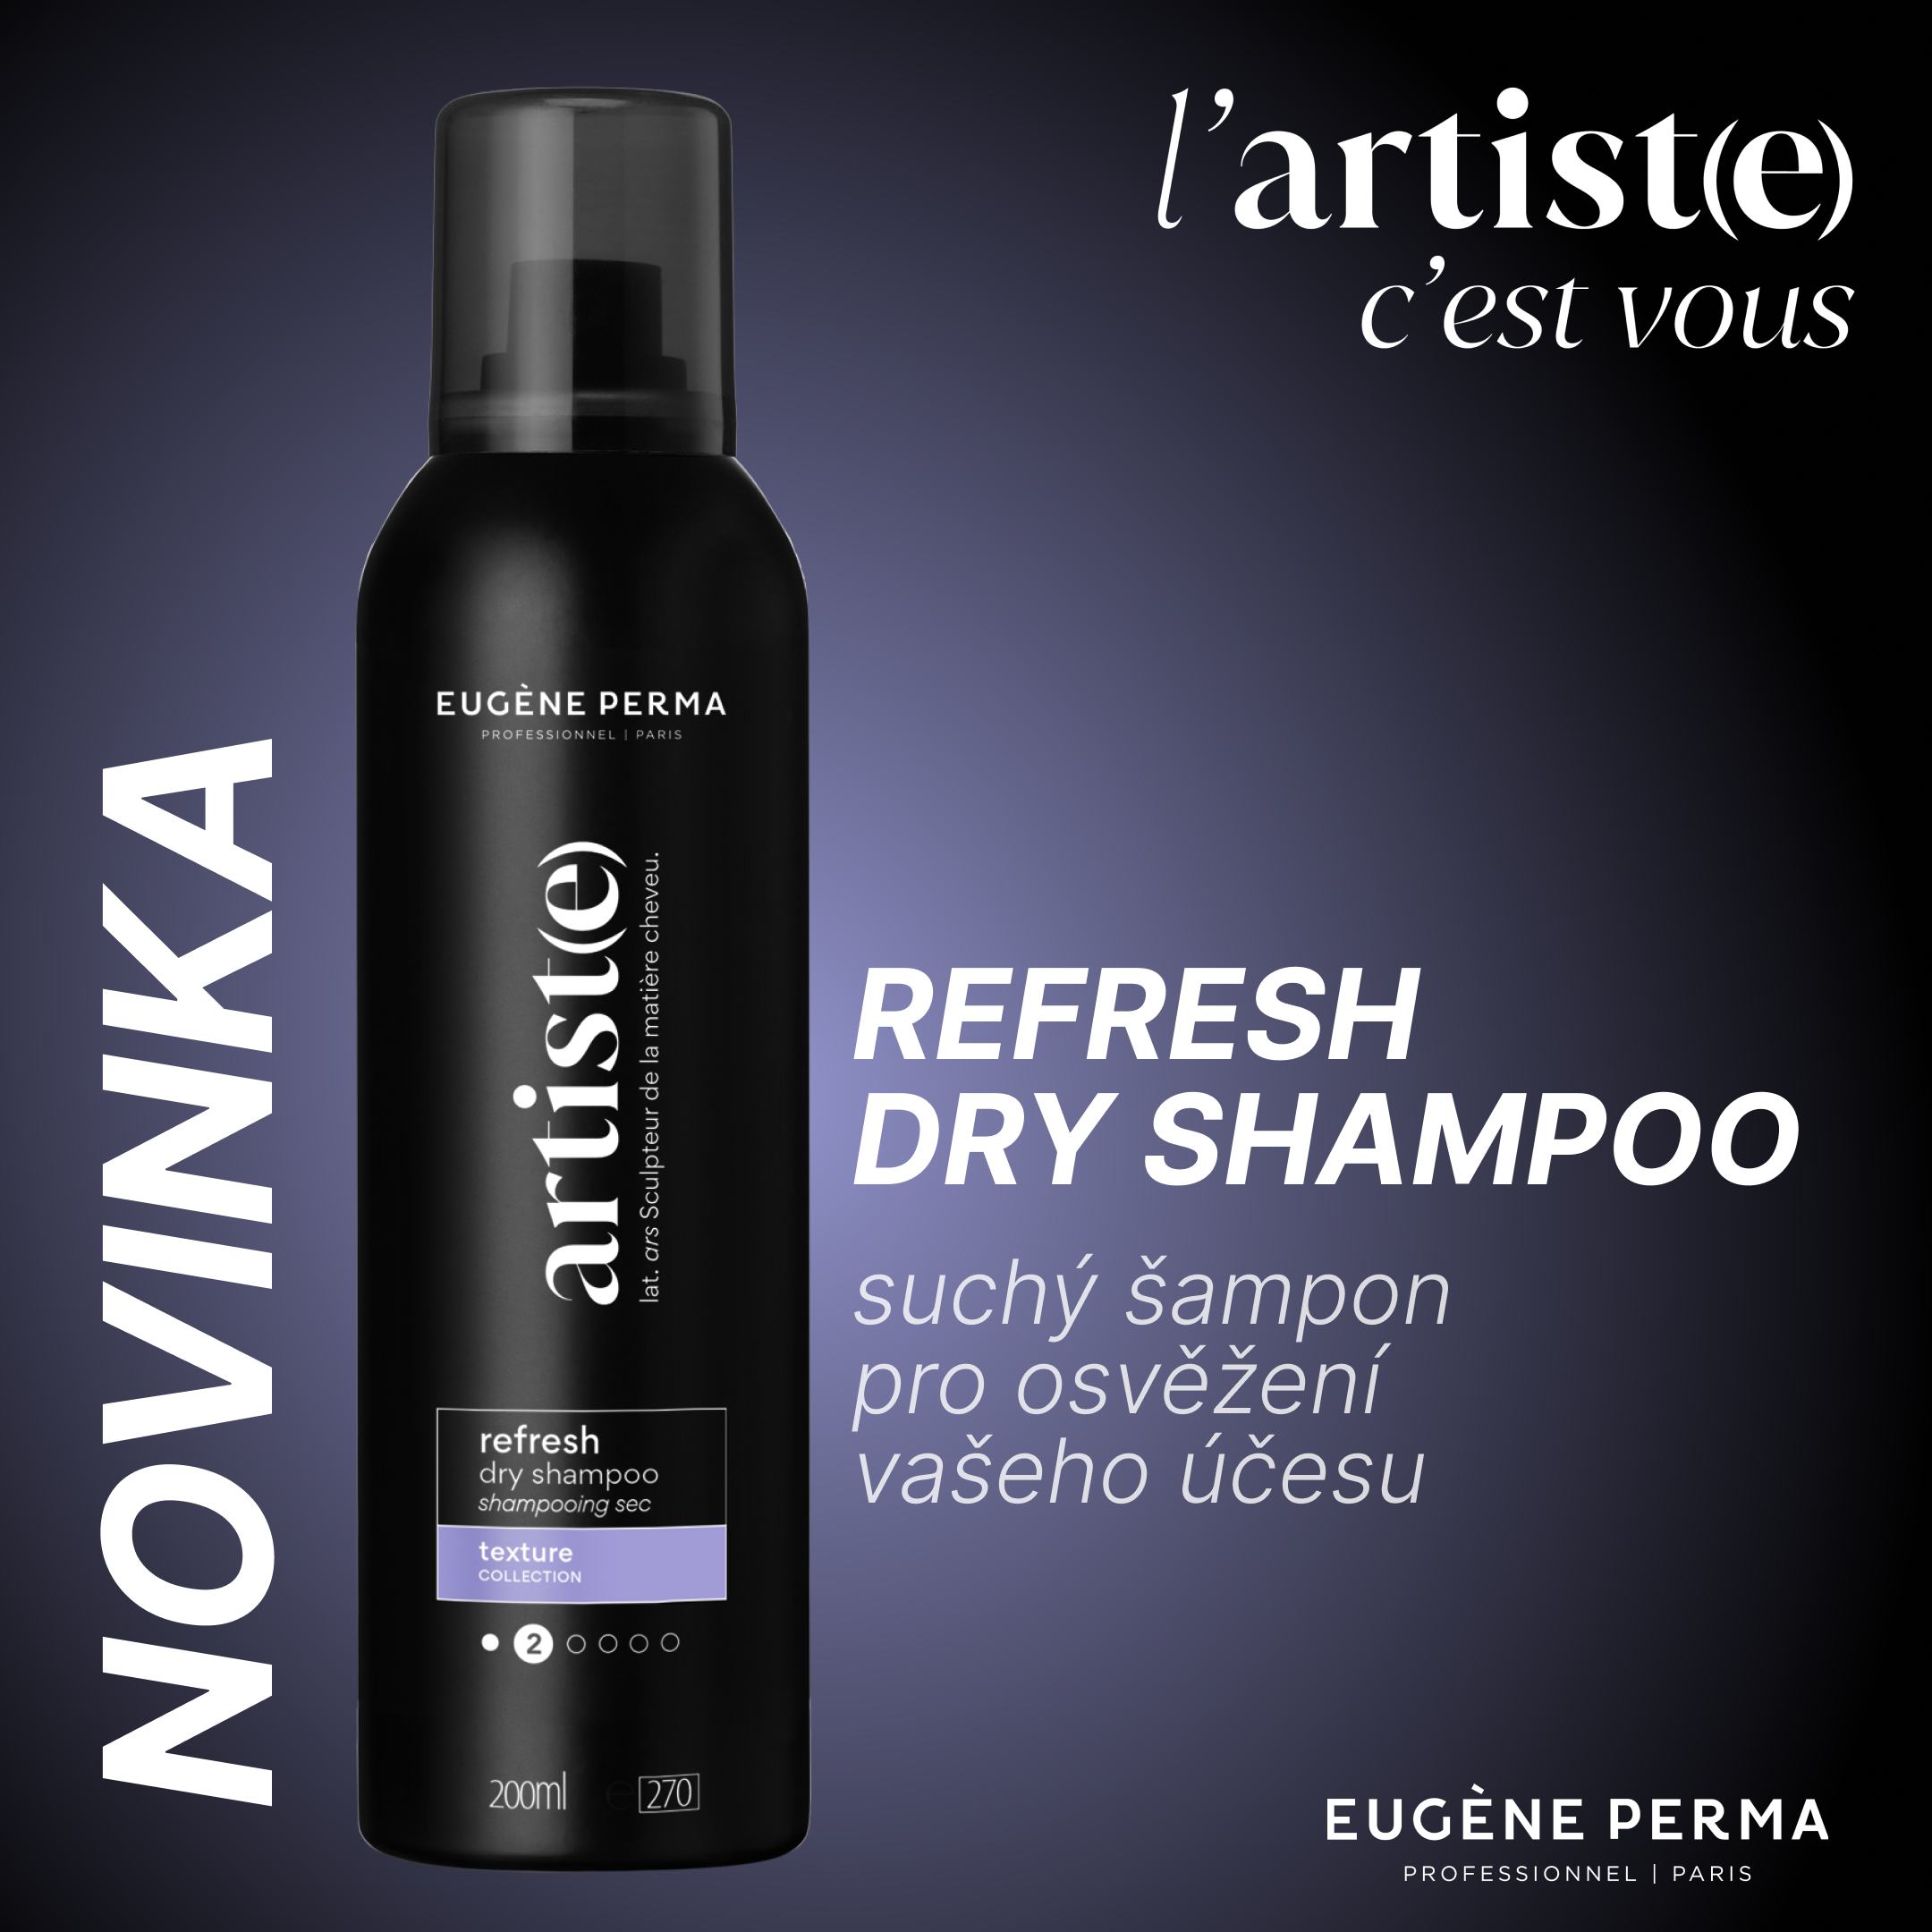 Zachránce vašeho účesu – Refresh Dry Shampoo !